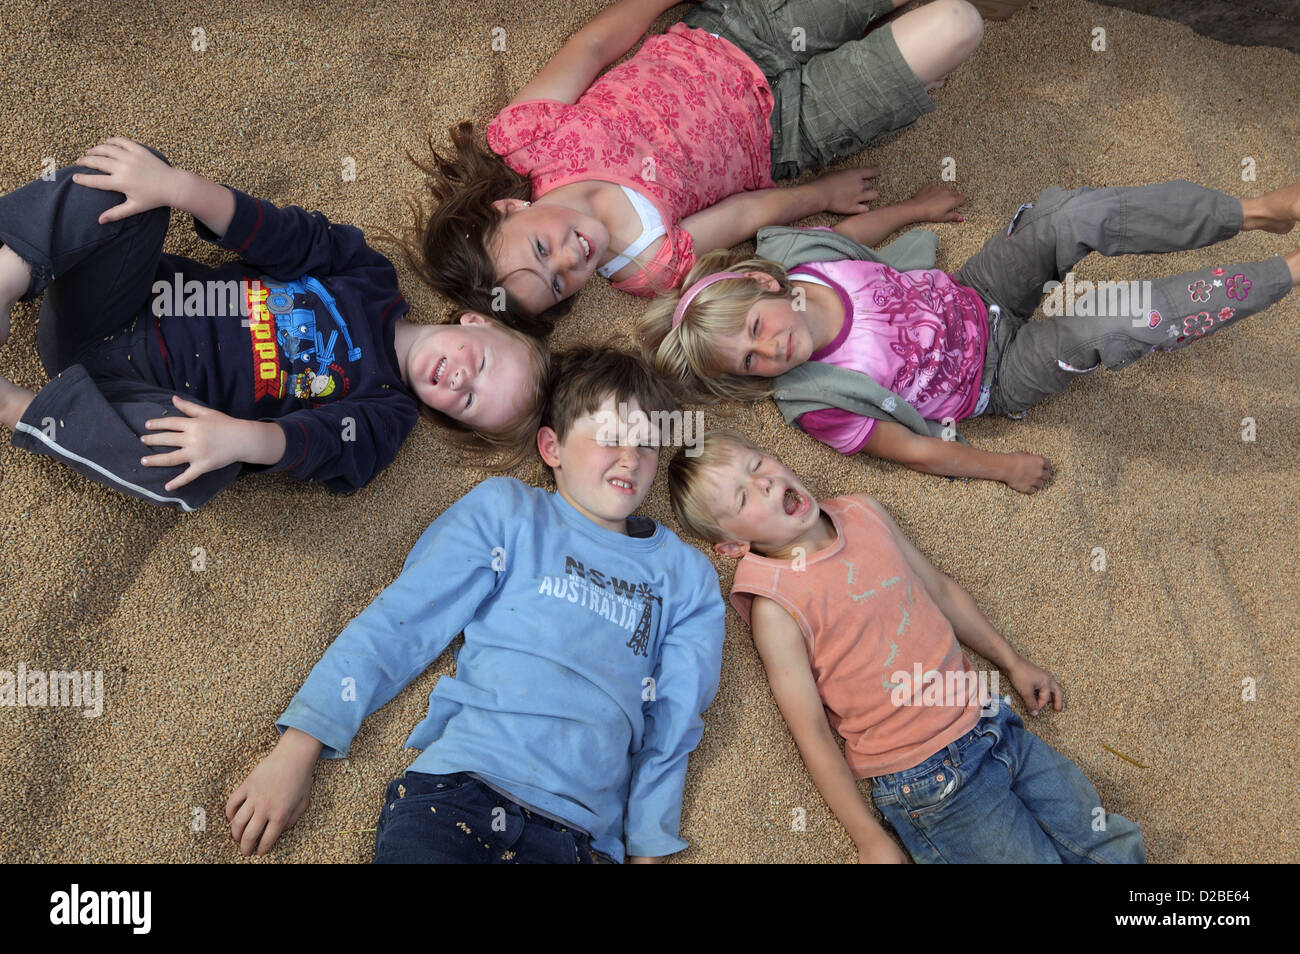 Aldea resplandeciente, en Alemania, los niños mienten sobre Weizenkoernern Foto de stock